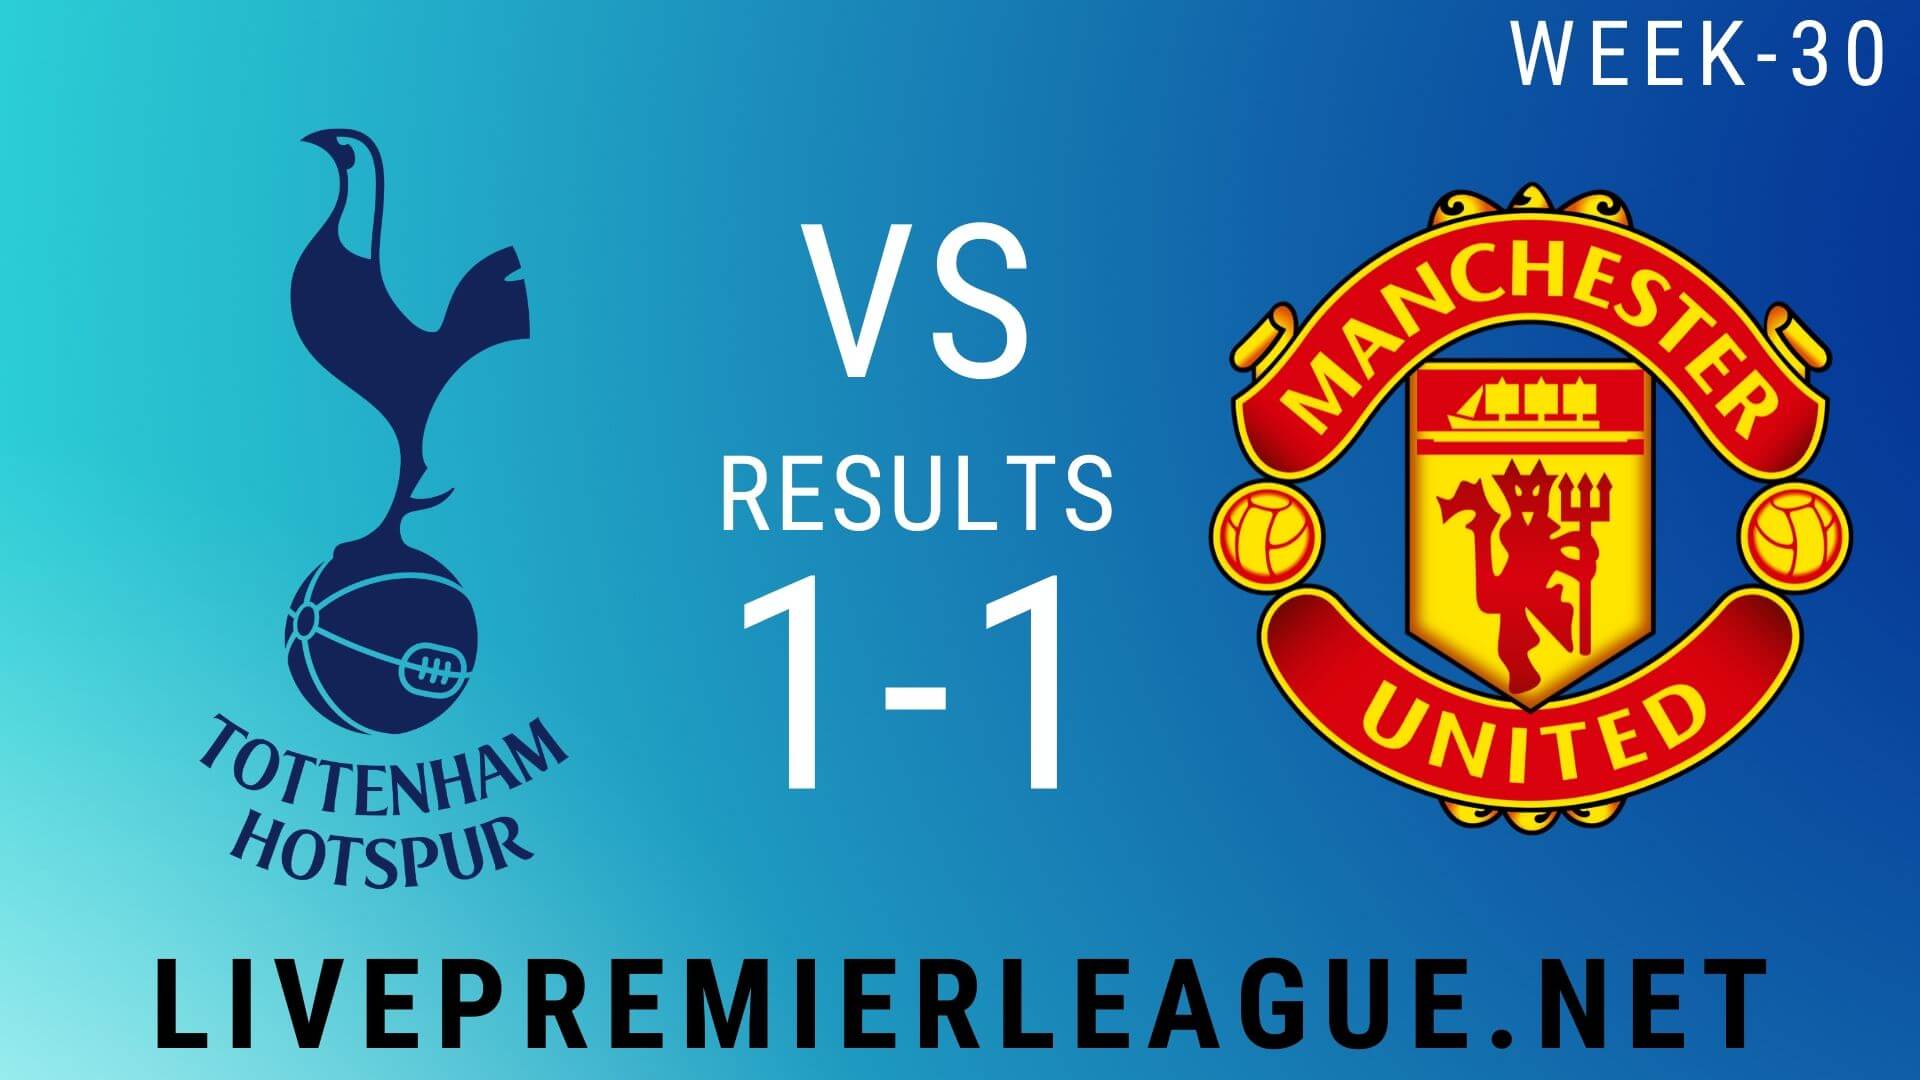 Tottenham Hotspur Vs Manchester United | Week 30 Result 2020